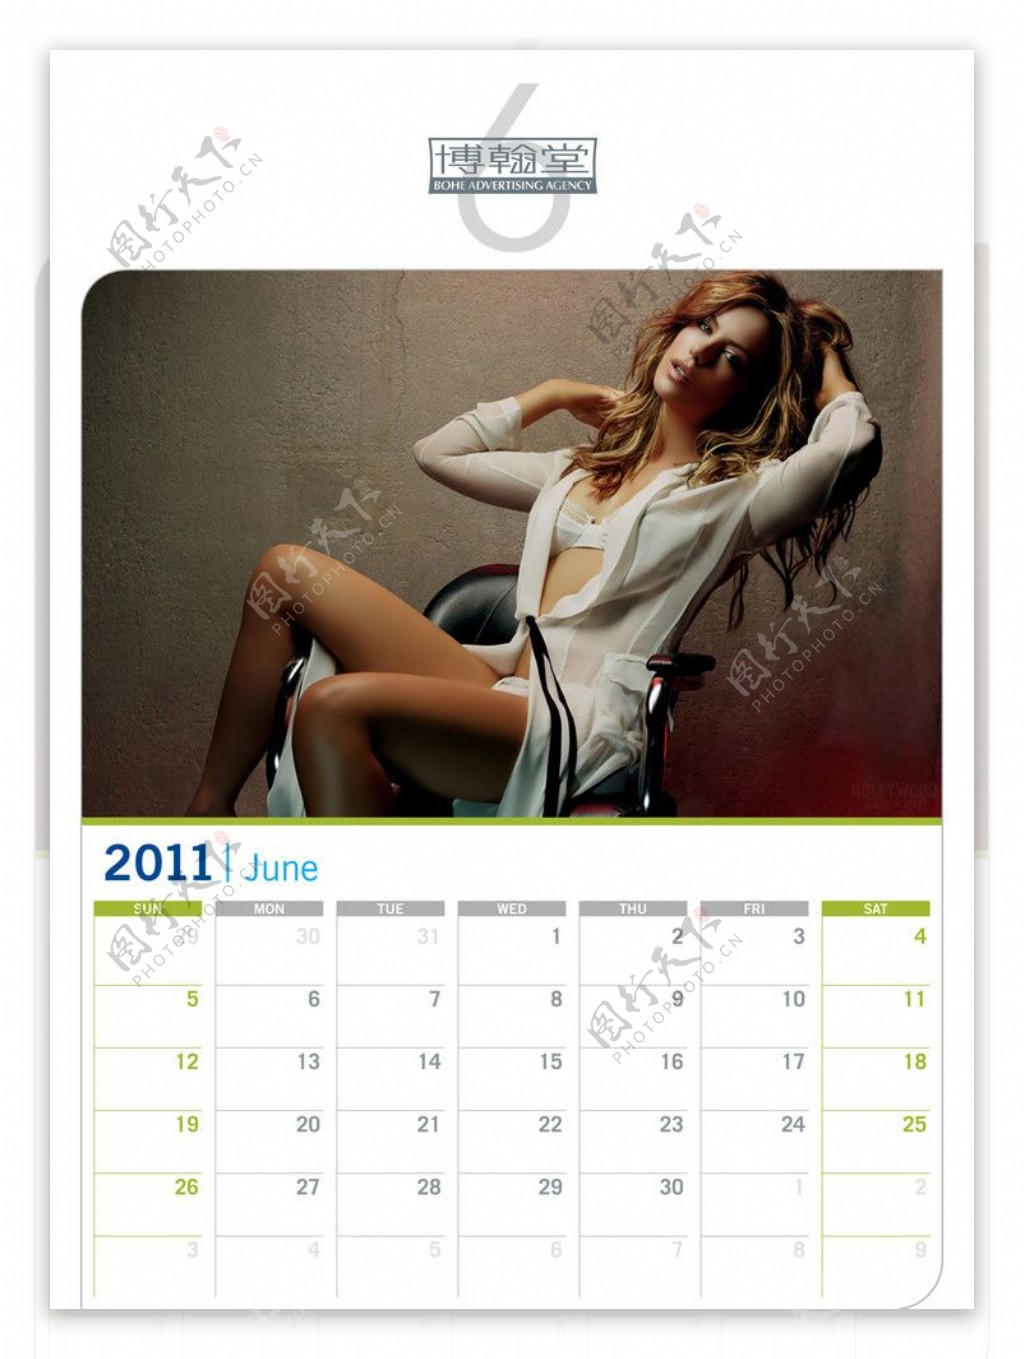 美女明星2011年历A4打印06月图片